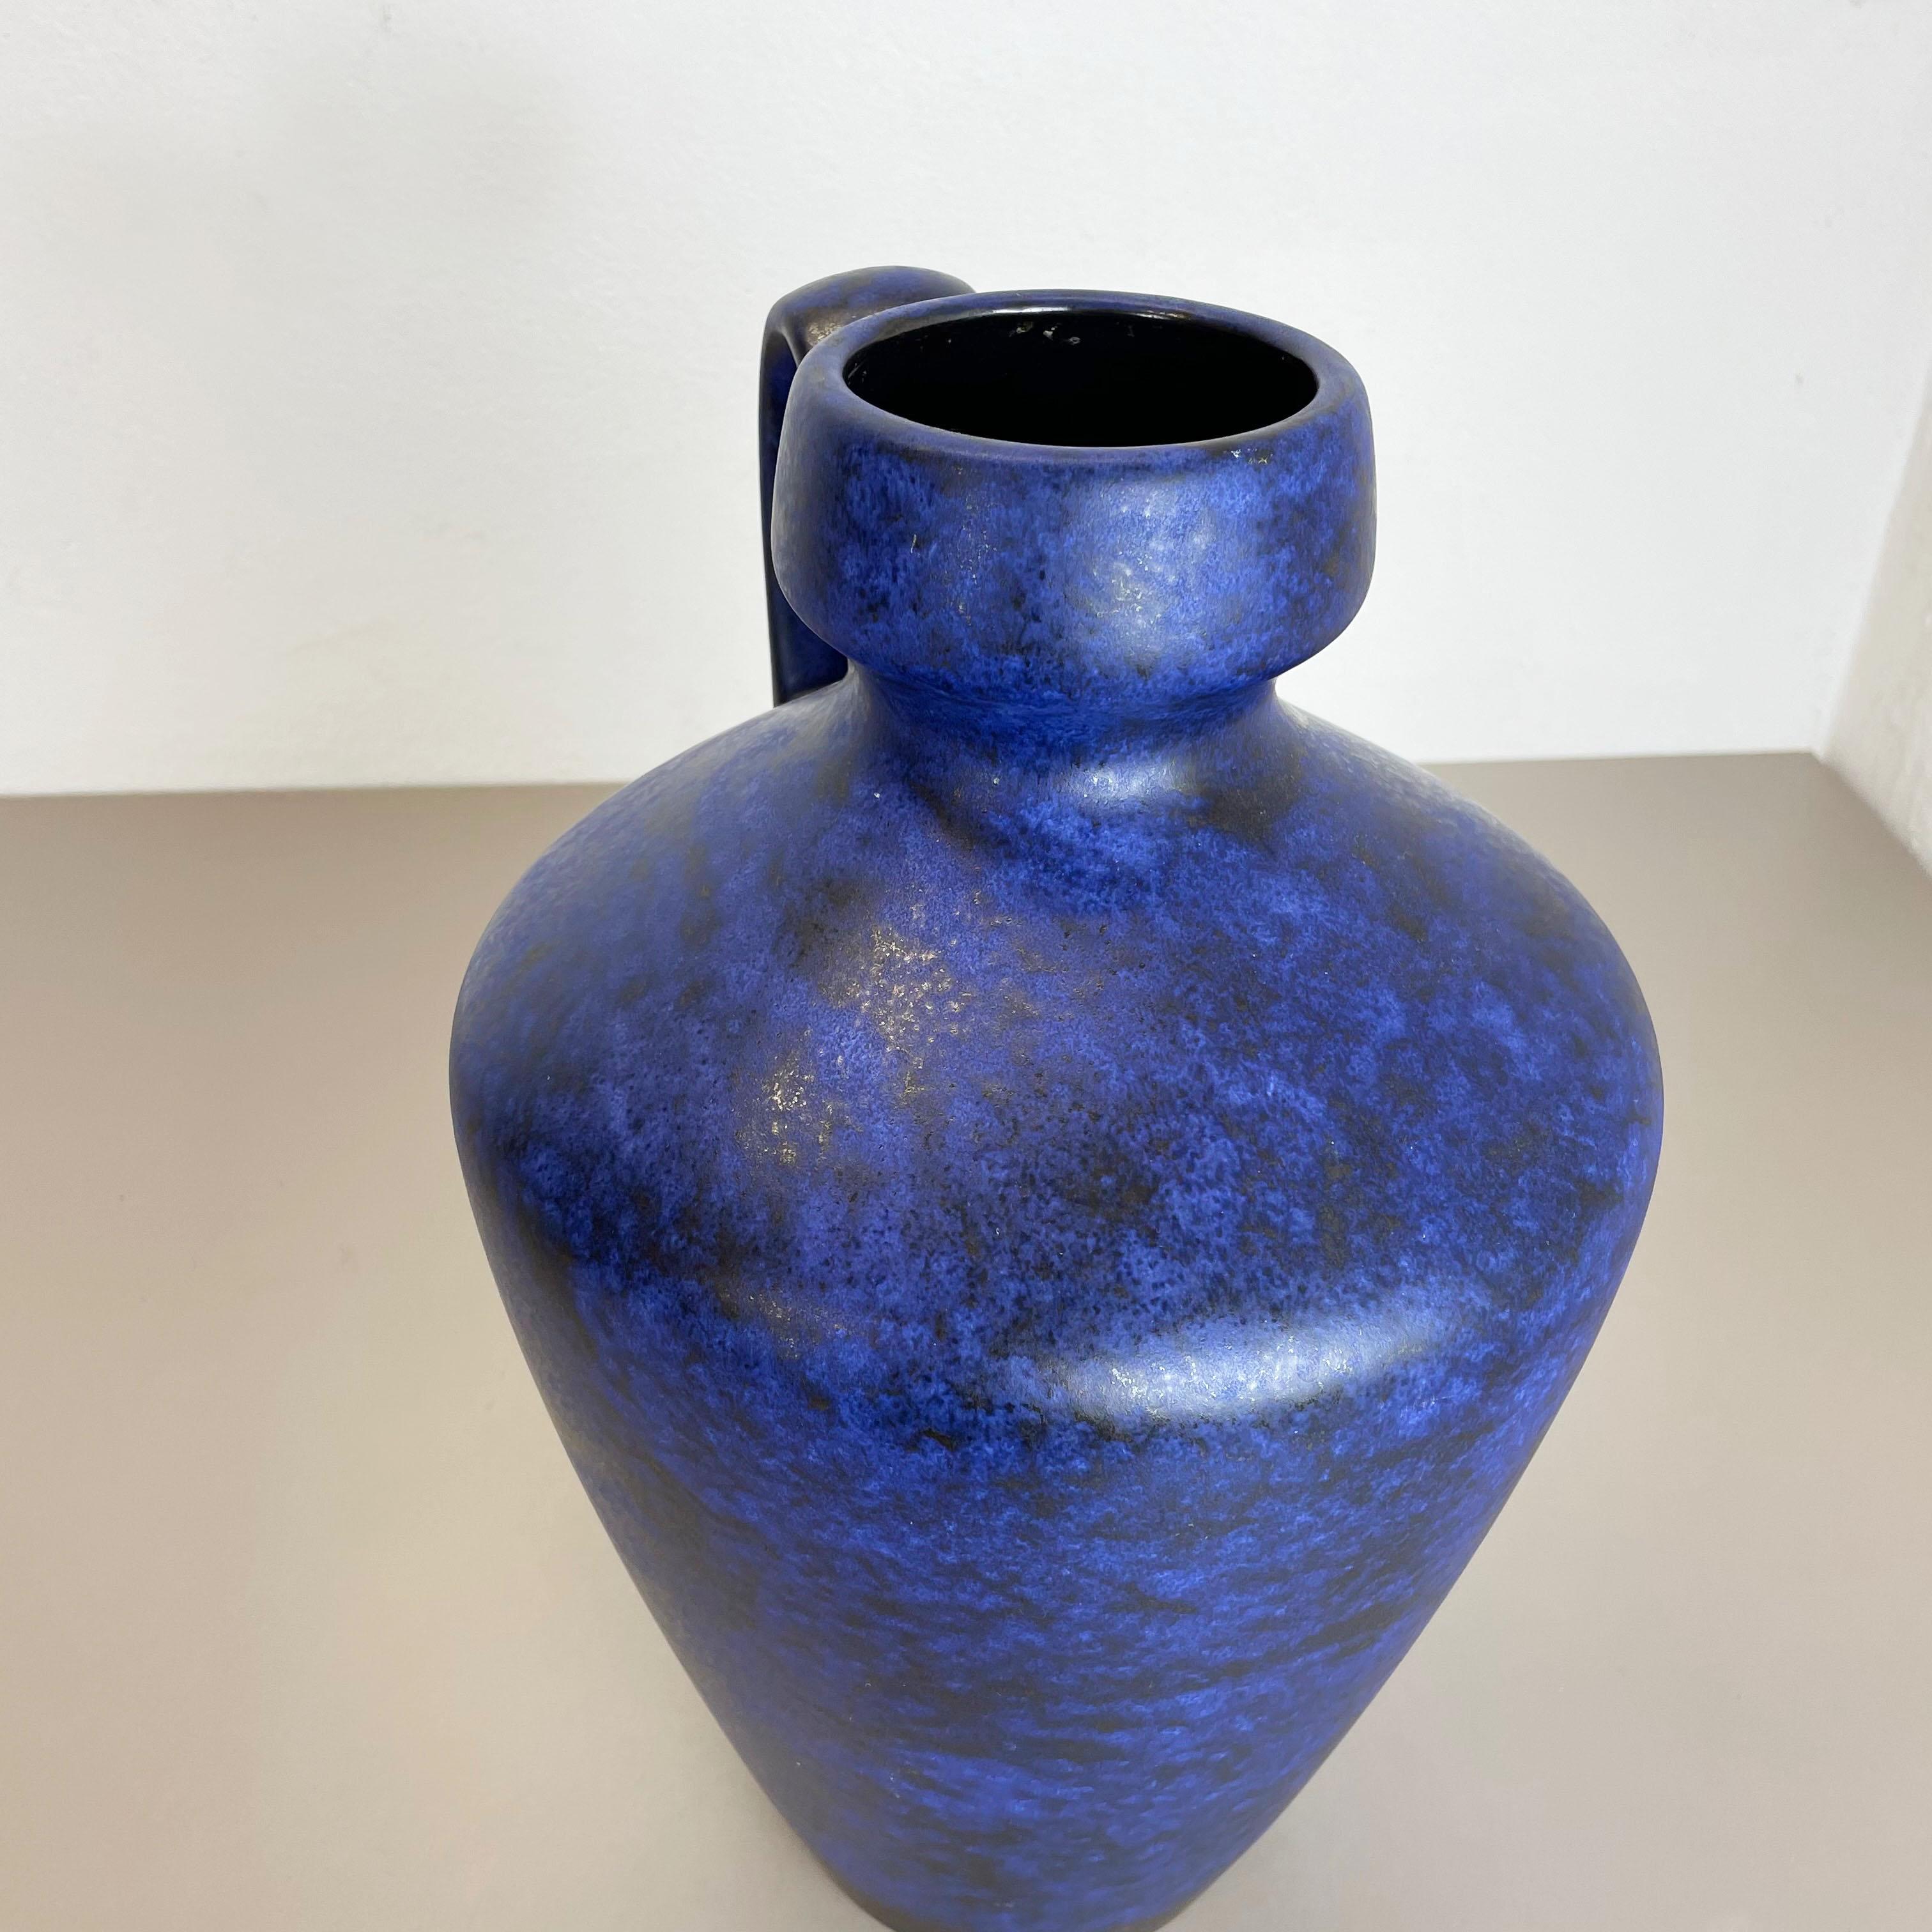 xxl Fat Lava Floor Ceramic Pottery Floor Vase by Fritz van Daalen, Germany 1960s For Sale 4